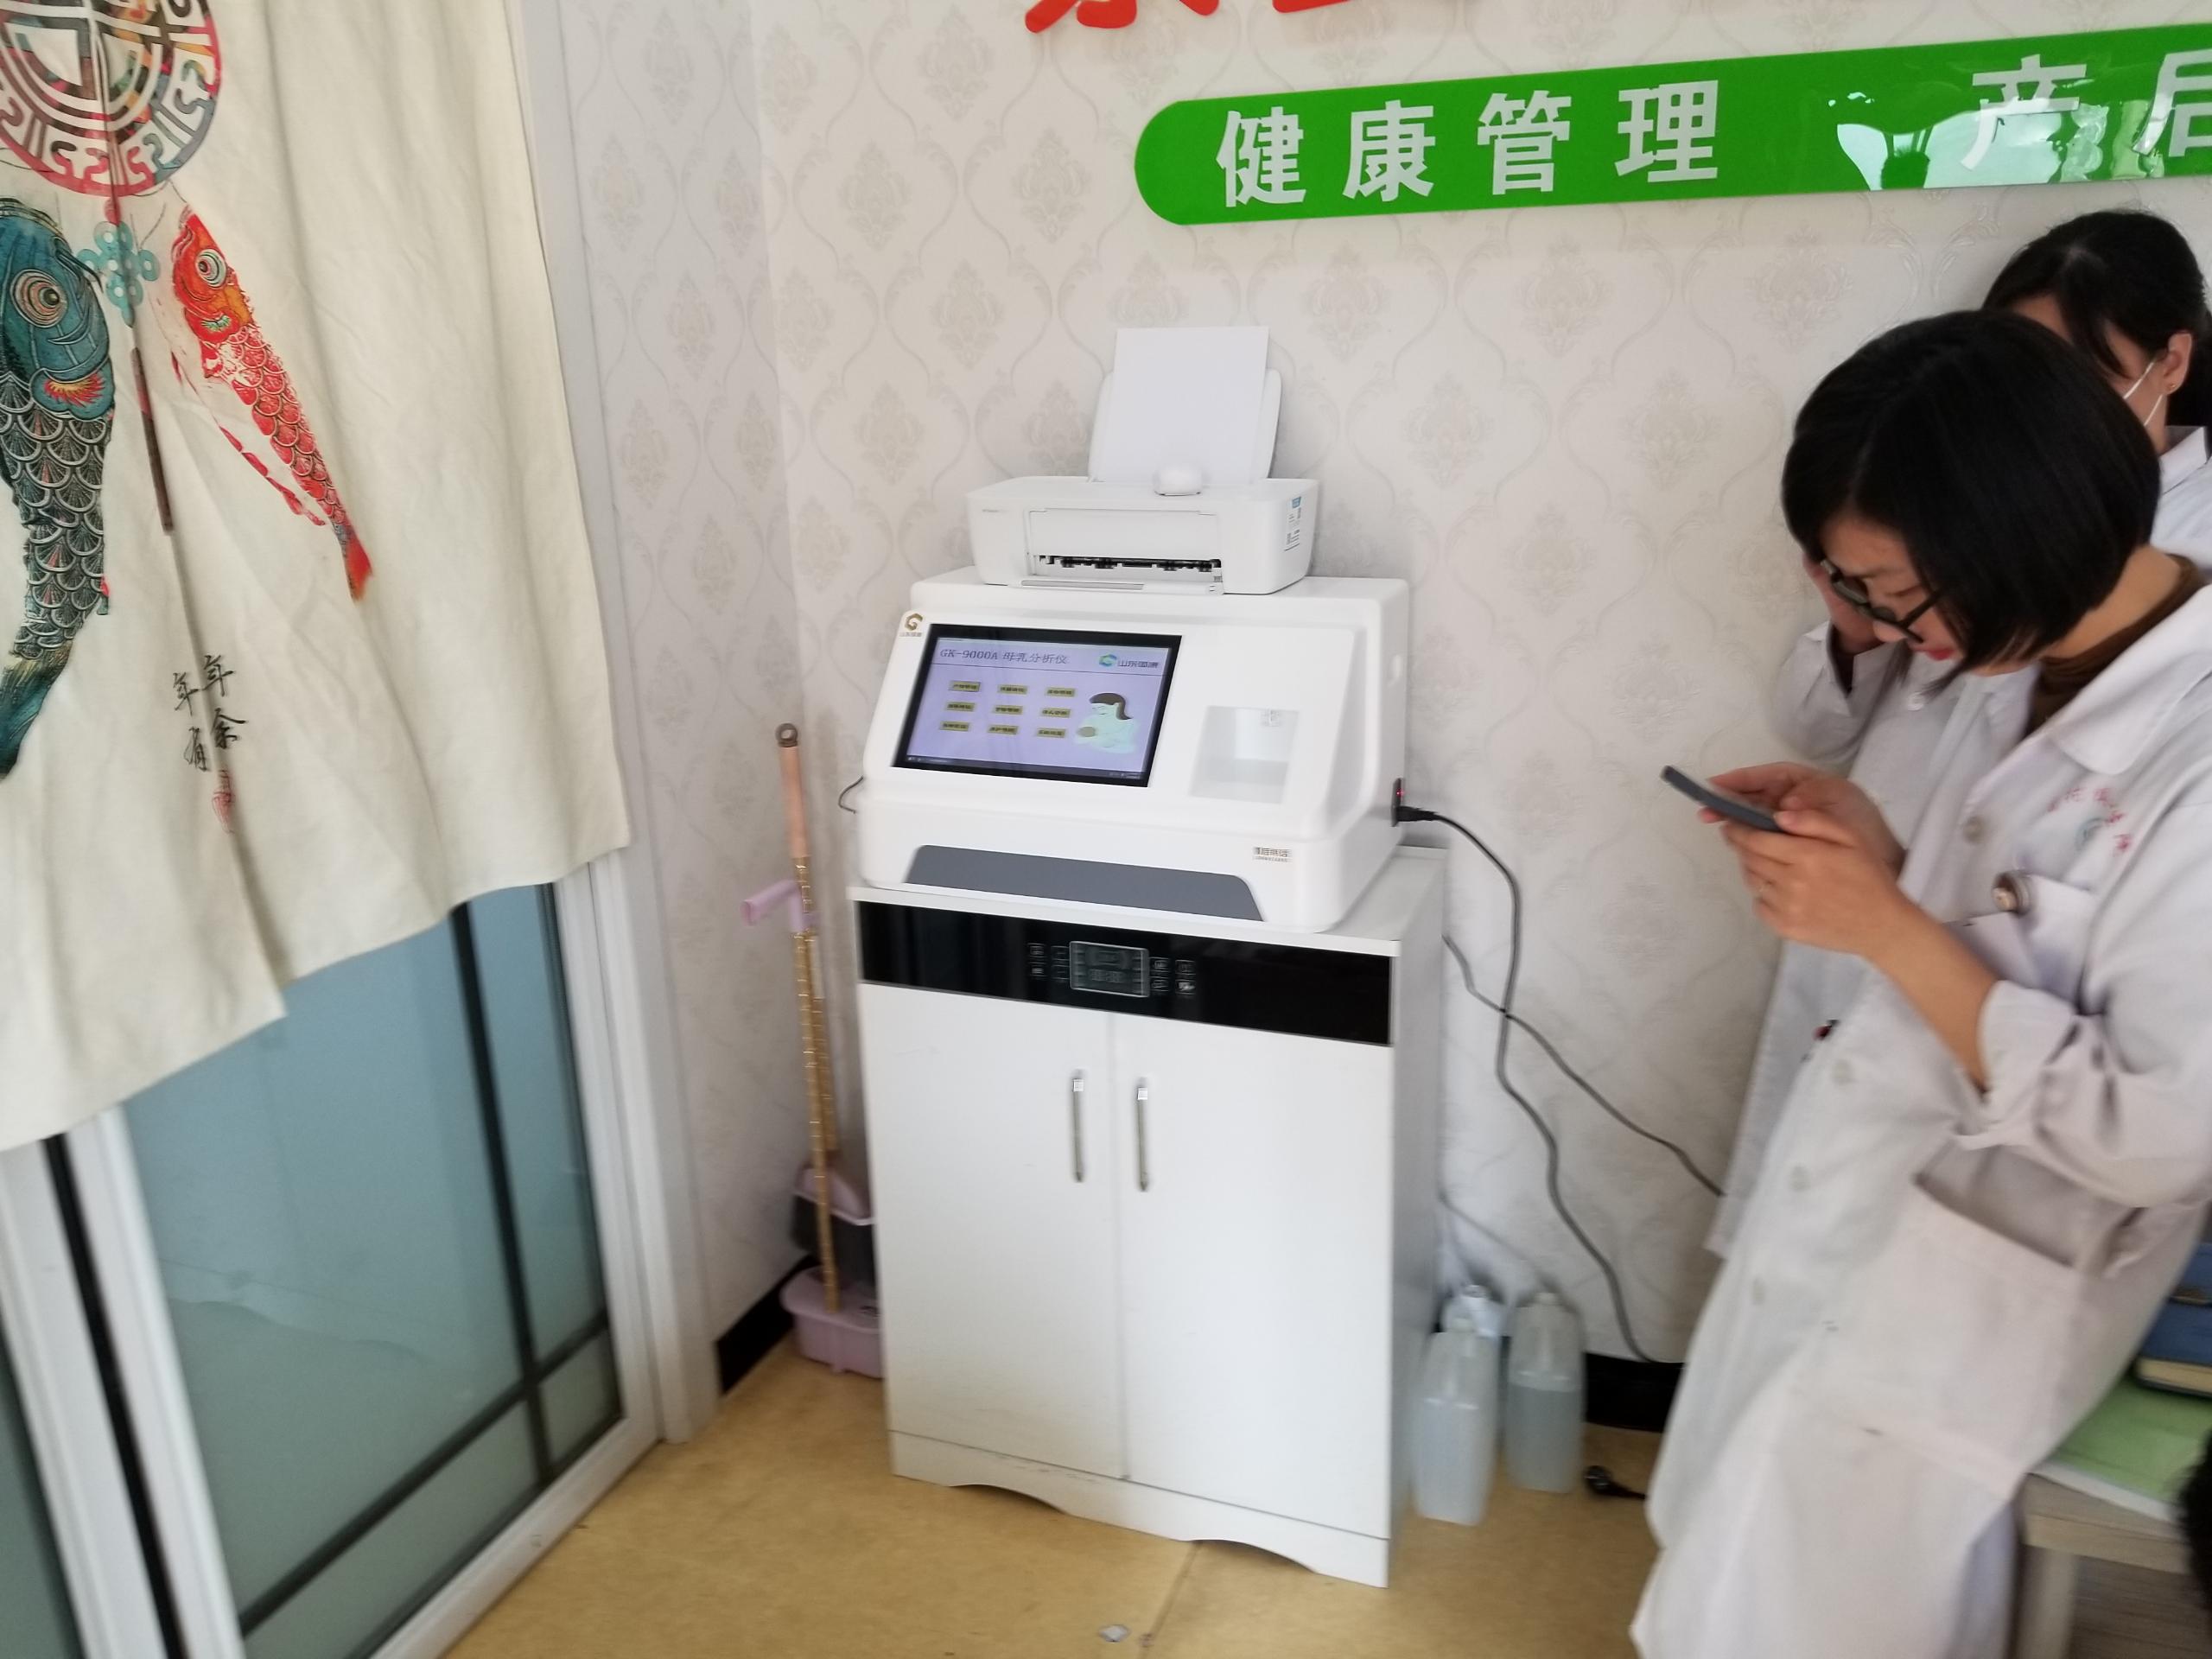 糖心vlog母乳分析仪在湖北武汉妇幼保健院装机啦！